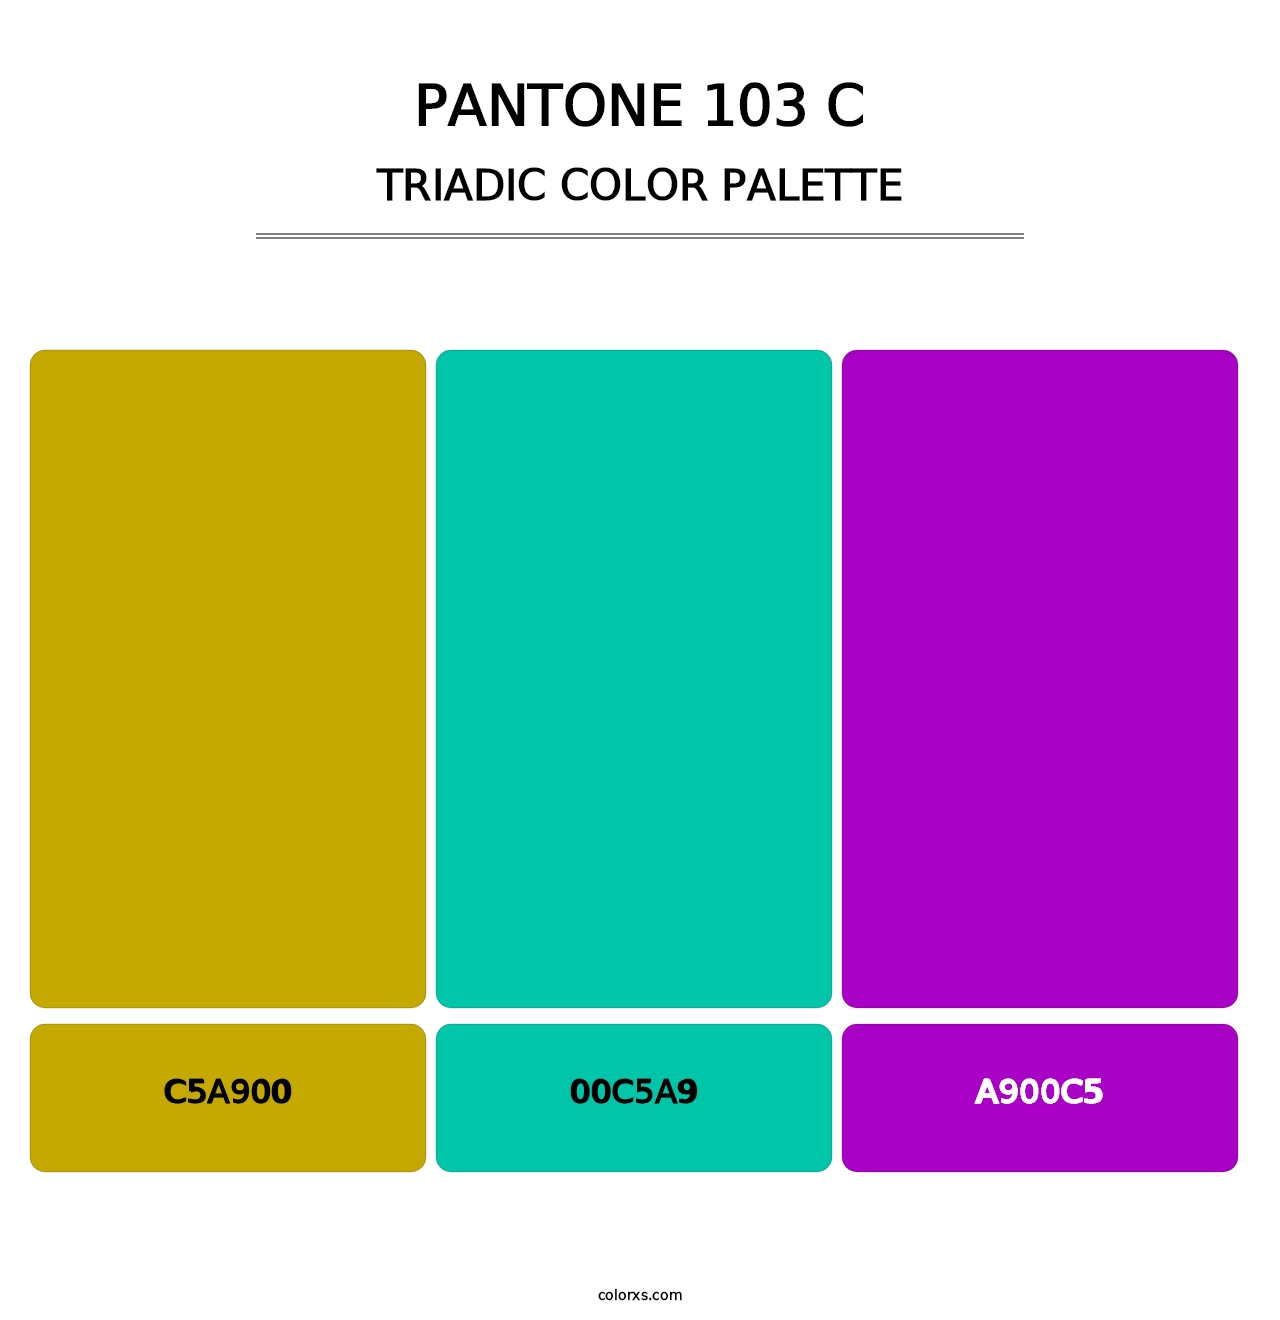 PANTONE 103 C - Triadic Color Palette